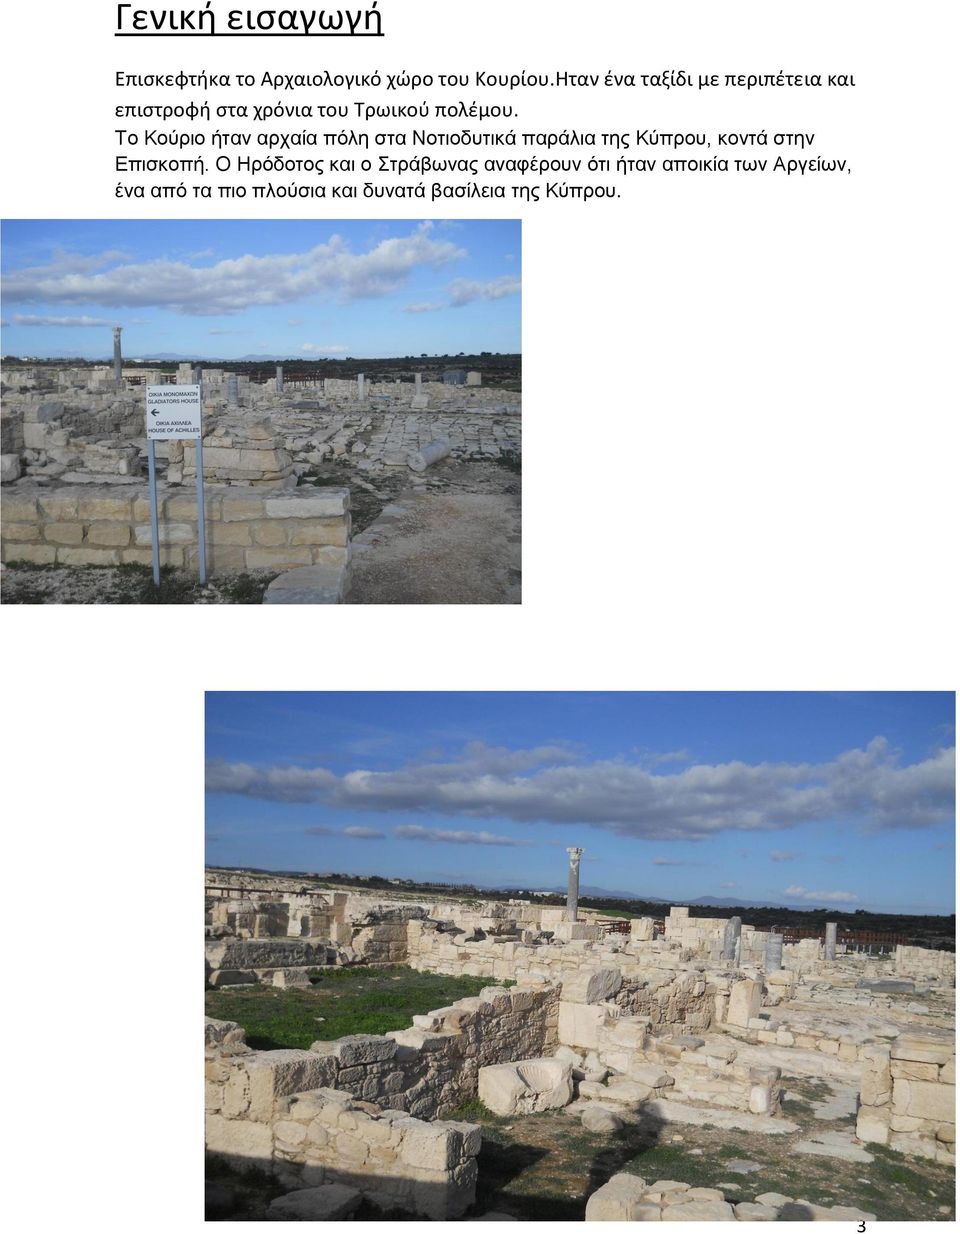 Το Κούριο ήταν αρχαία πόλη στα Νοτιοδυτικά παράλια της Κύπρου, κοντά στην Επισκοπή.